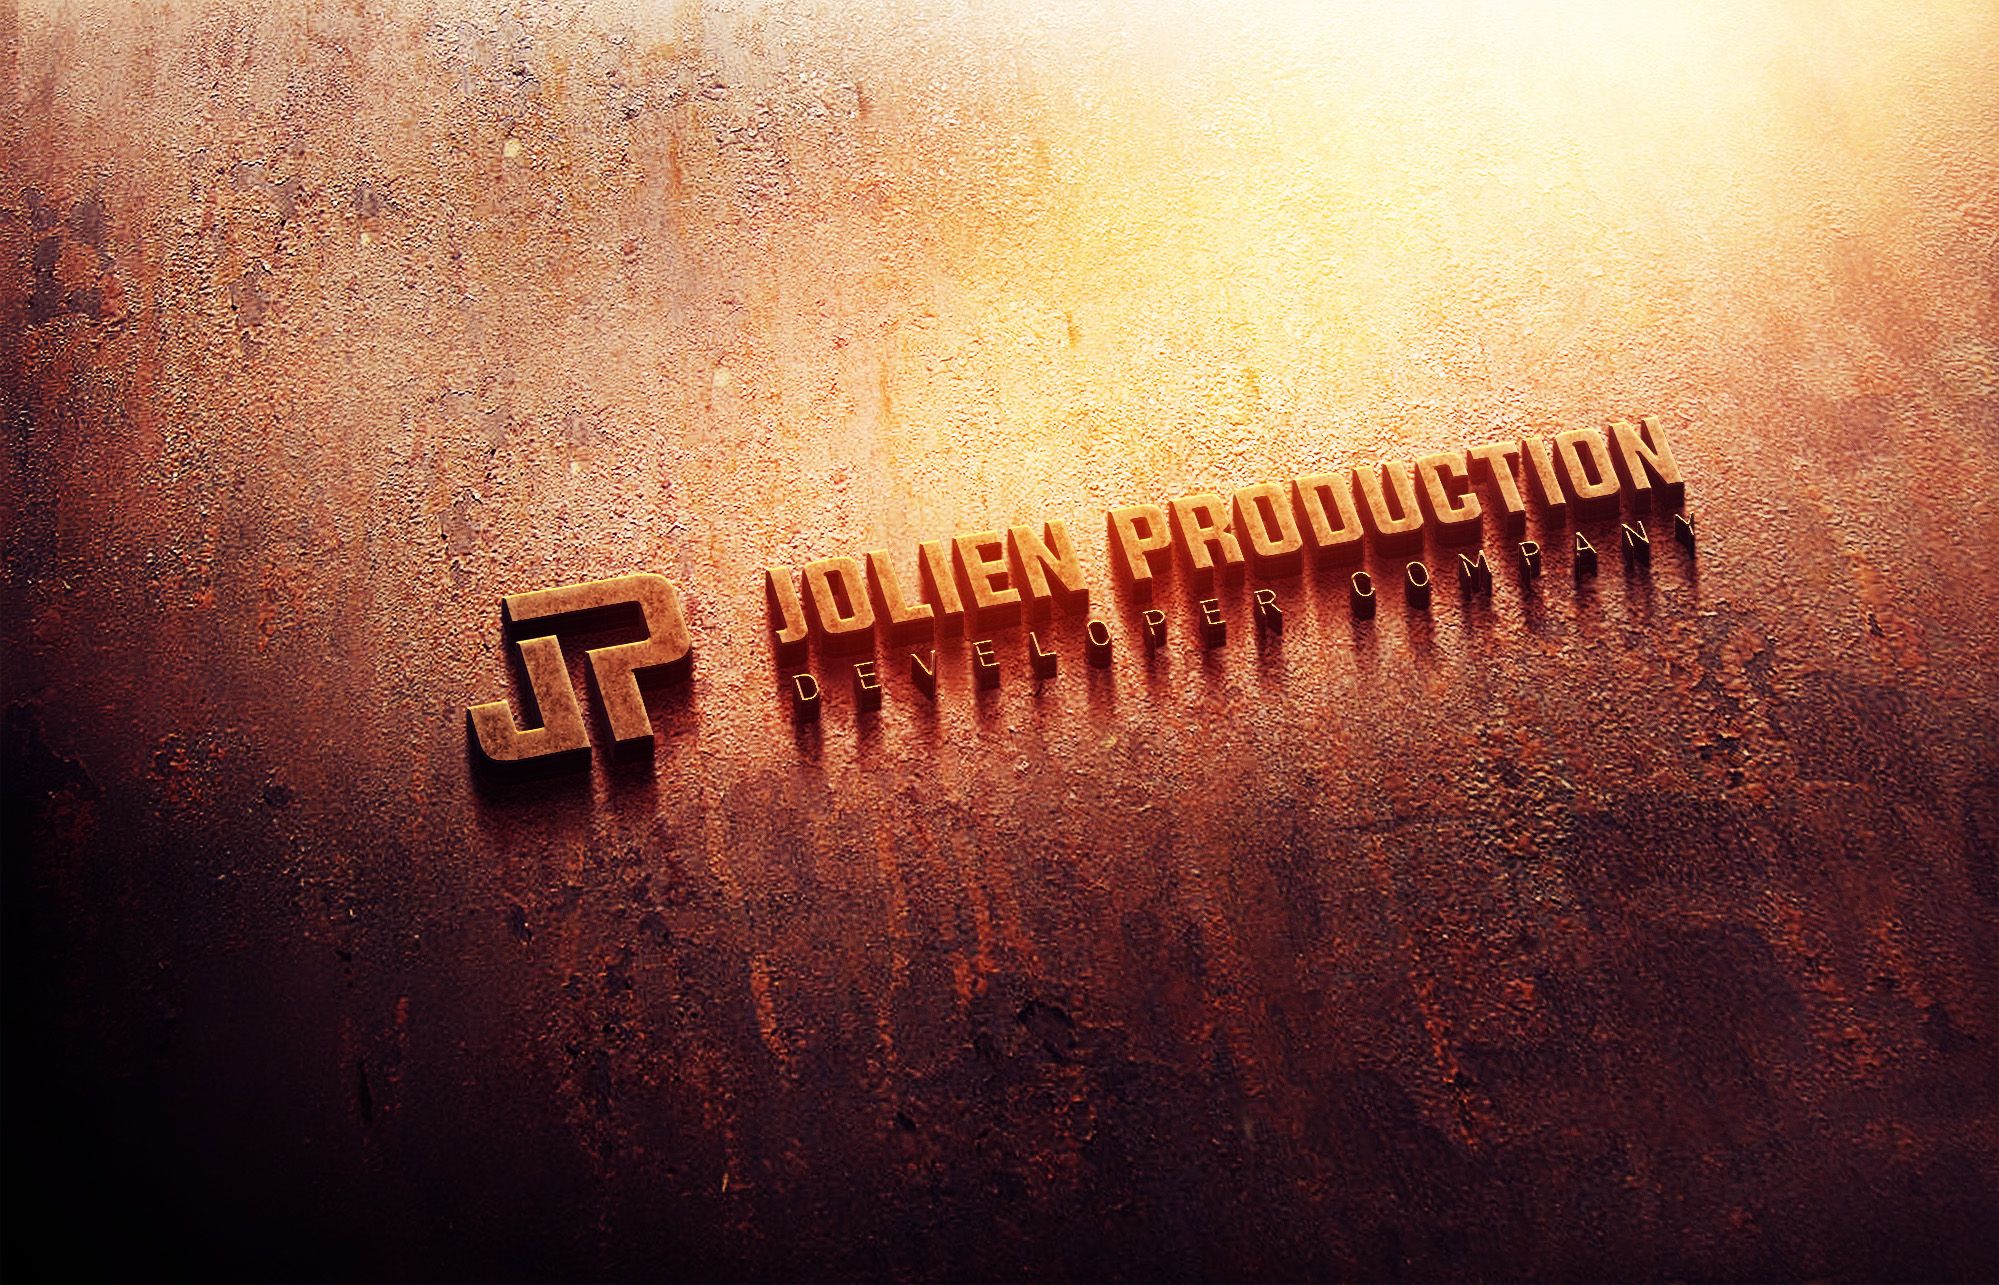 Логотип и фирменный стиль для Jolien Production - дизайнер U4po4mak